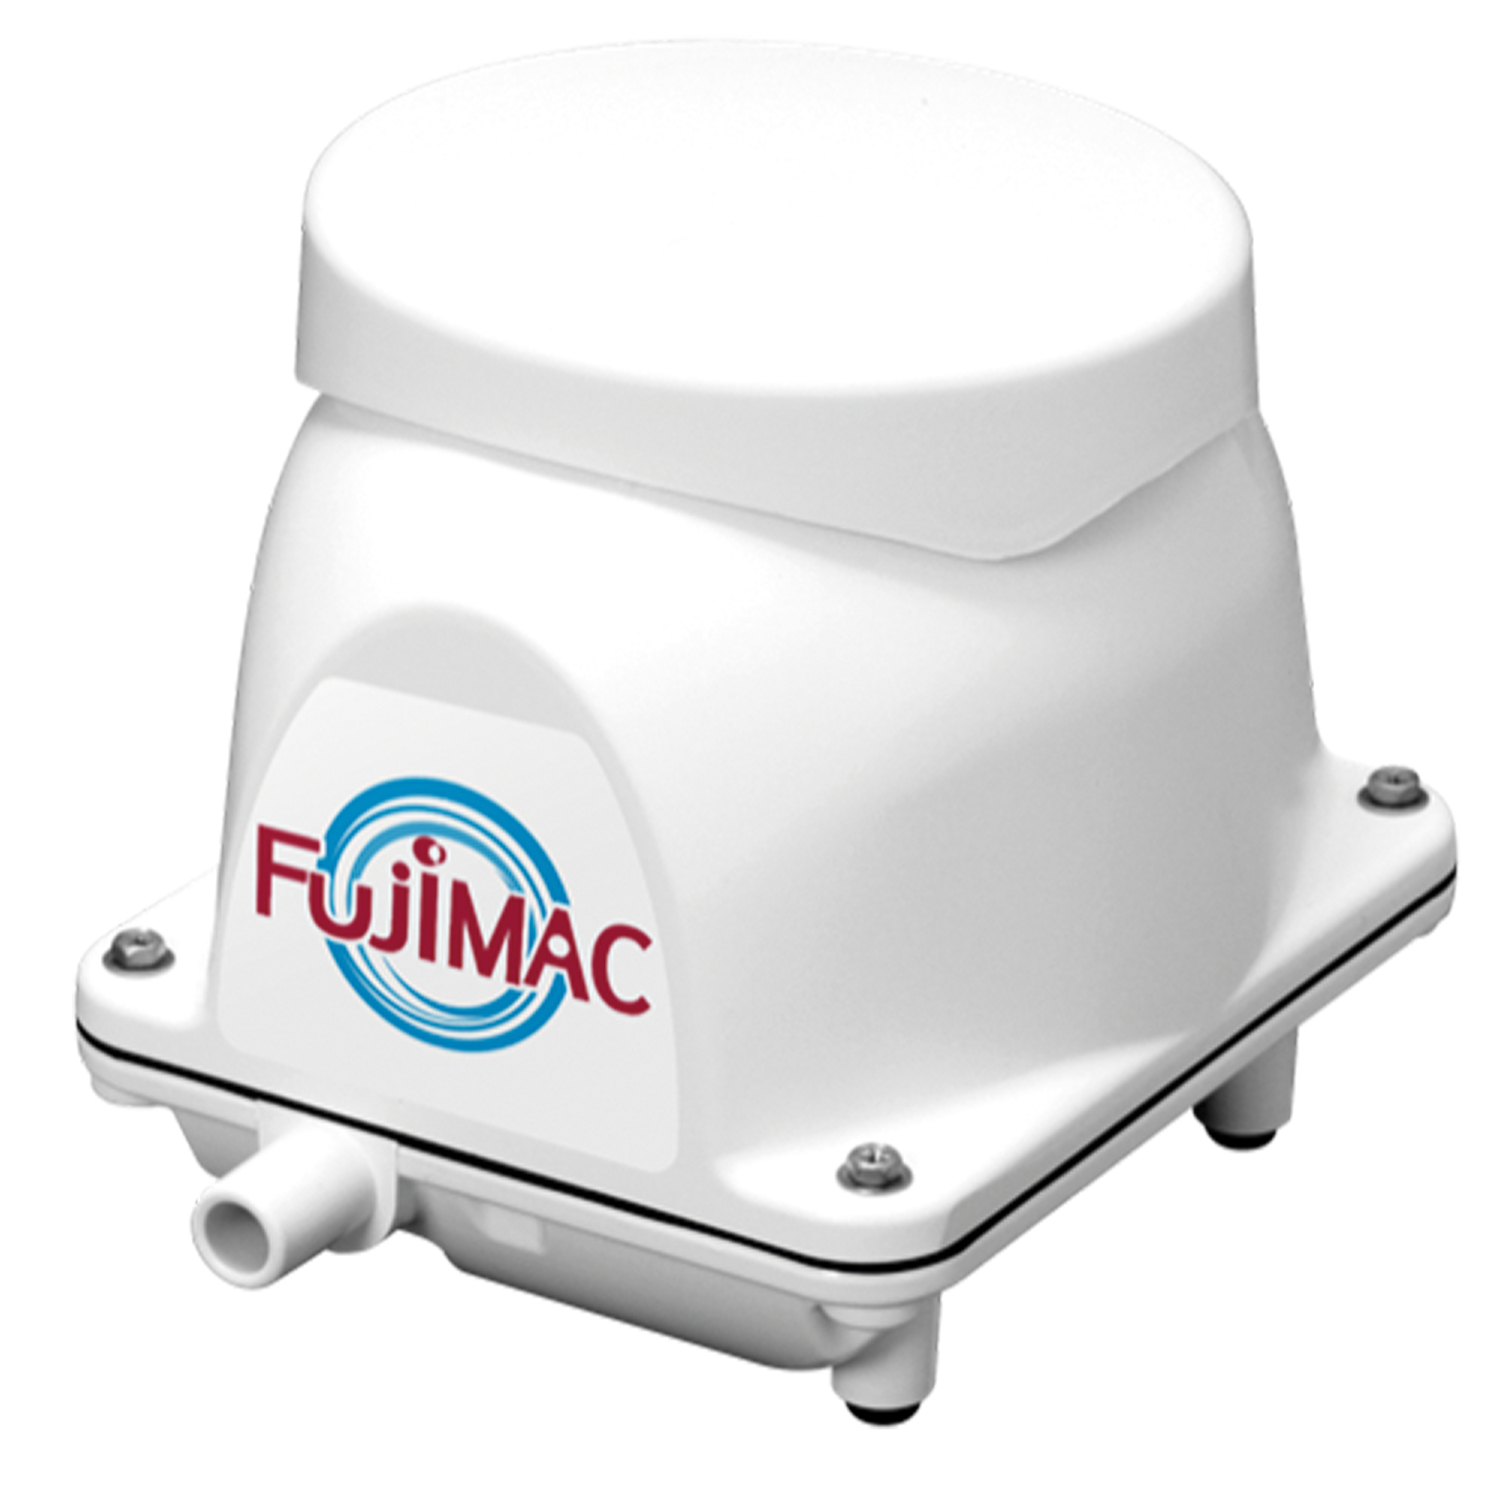 Fujimac Sauerstoffpumpen